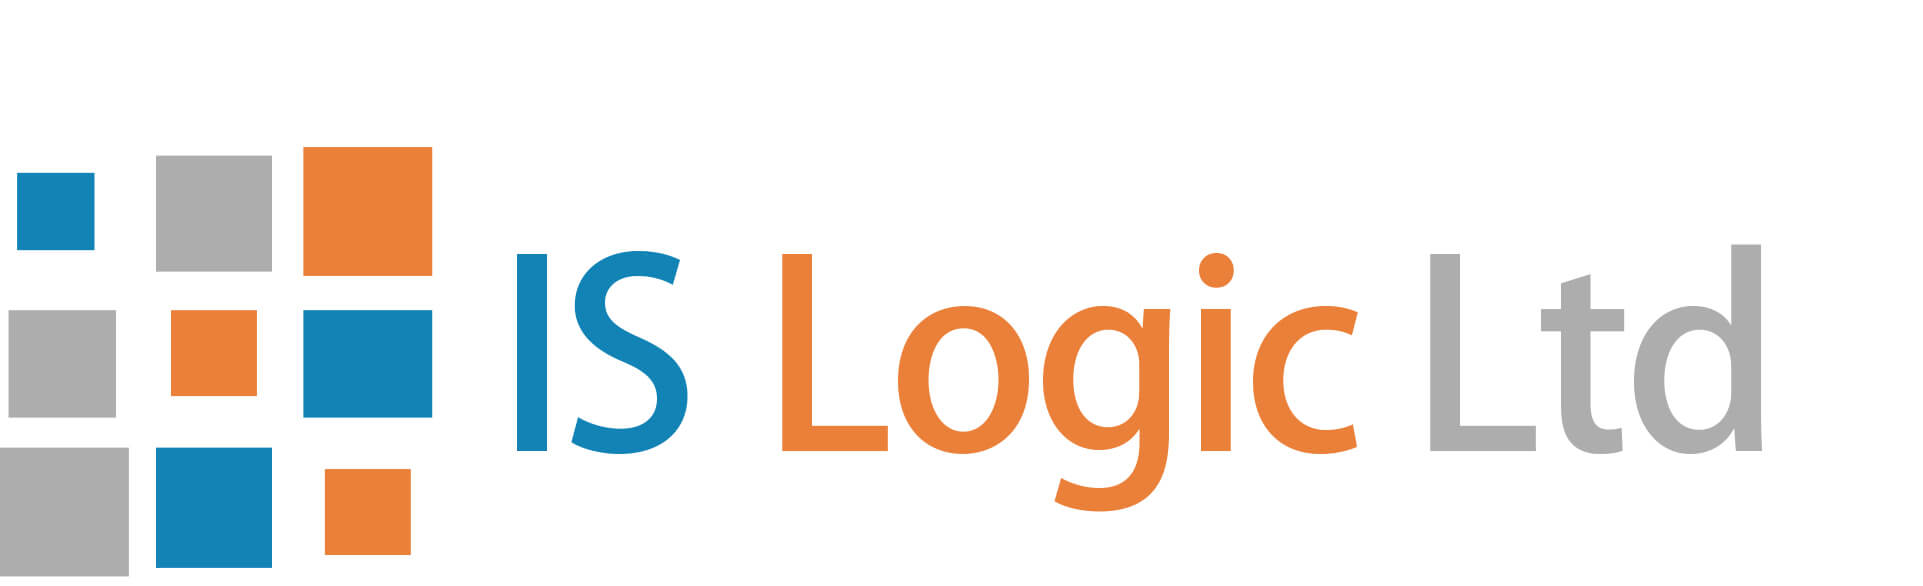 IS Logic Ltd